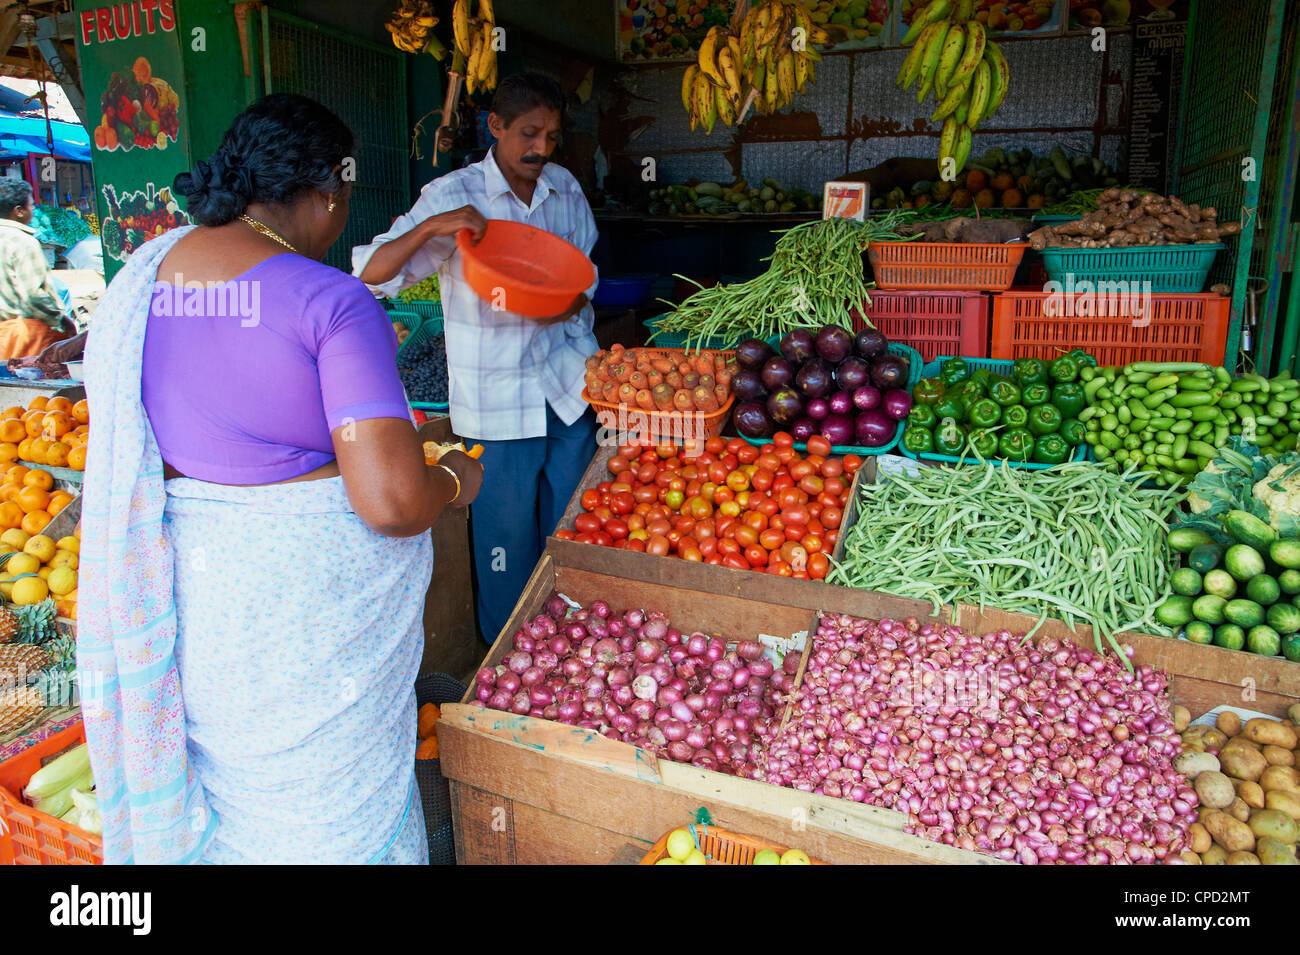 Fruit market, Trivandrum (Thiruvananthapuram), Kerala, India, Asia Stock Photo